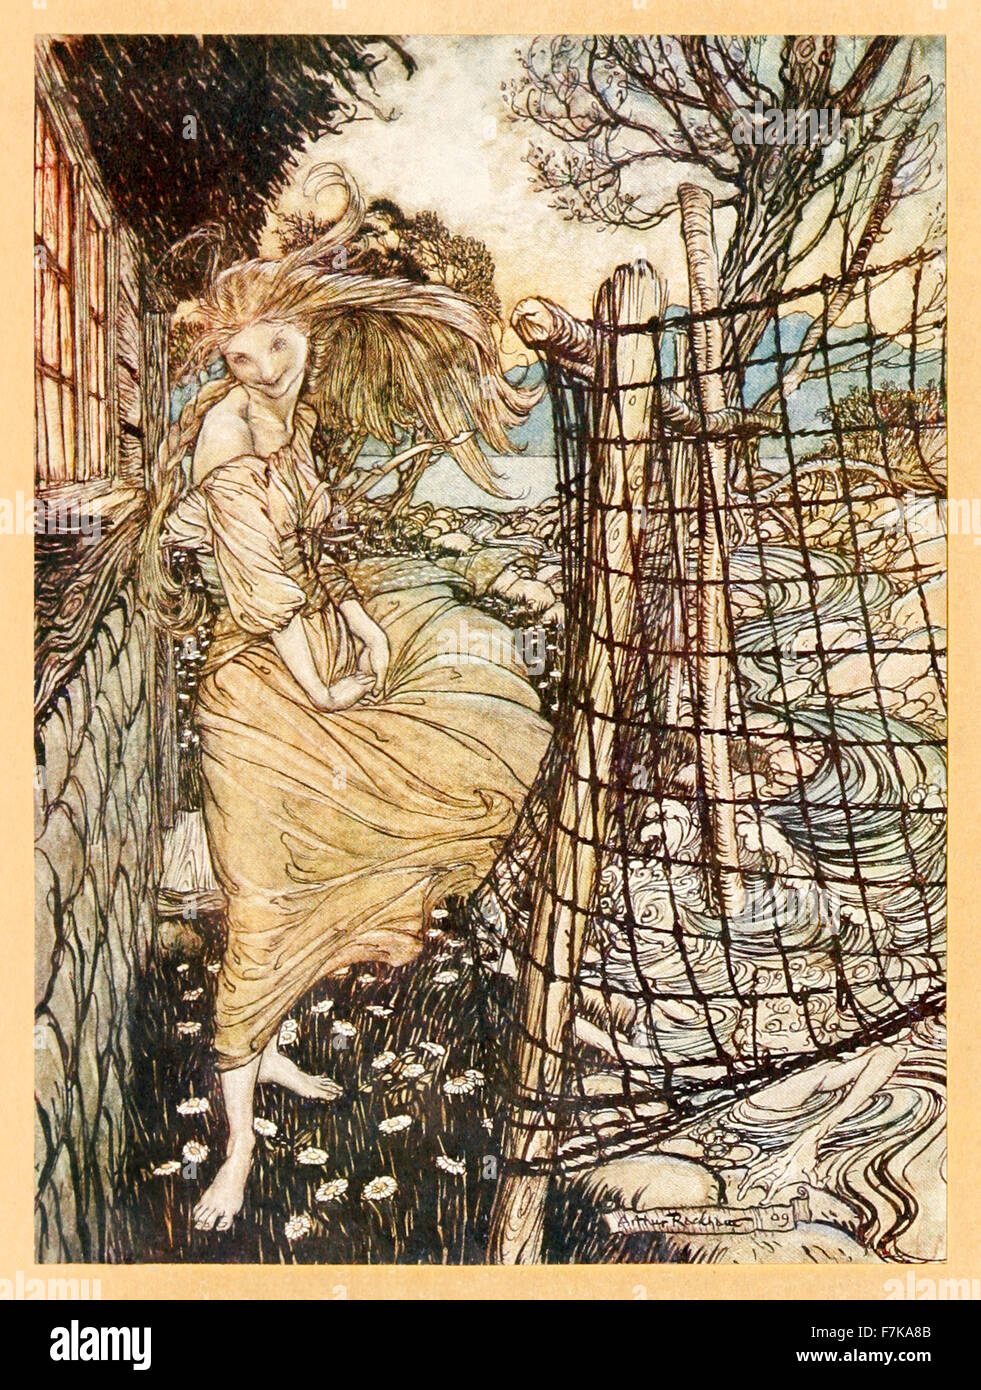 Frontispiz zeigt "Undine außerhalb des Fensters" von "Undine", illustriert von Arthur Rackham (1867-1939). Siehe Beschreibung für mehr Informationen. Stockfoto